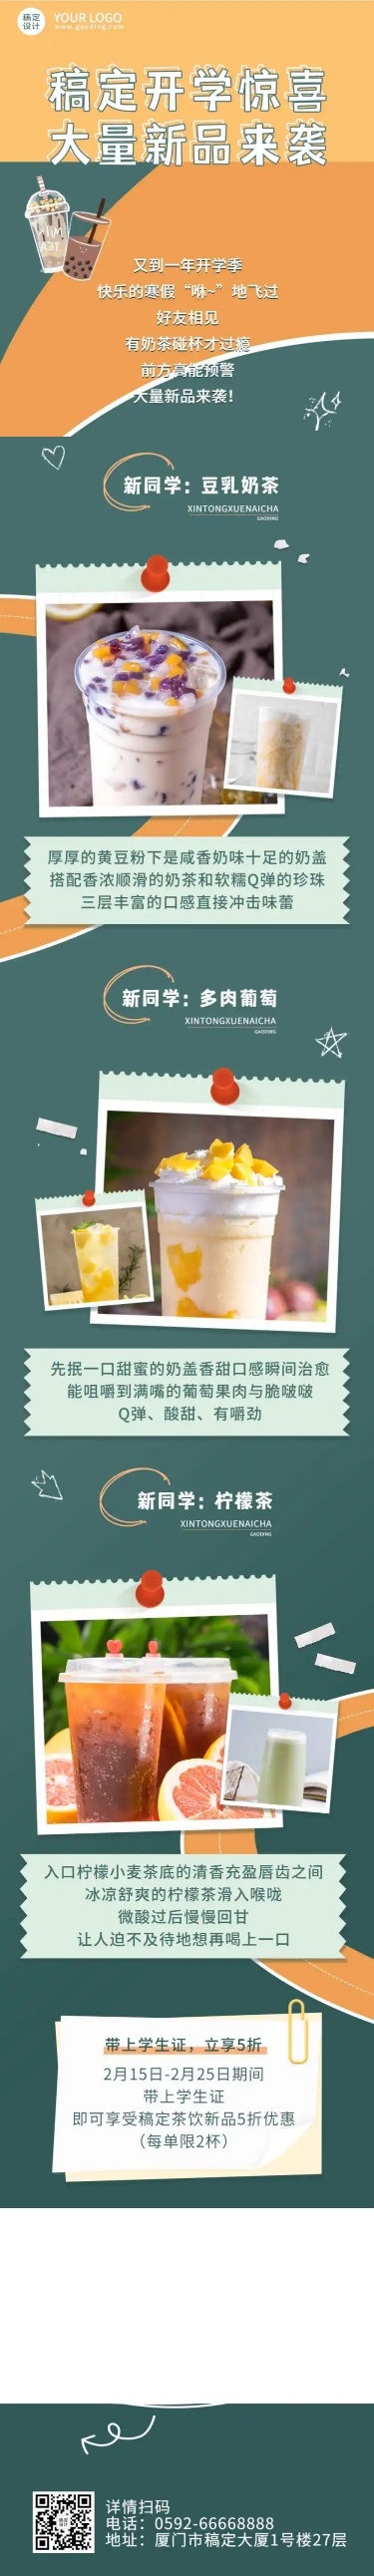 奶茶饮品节点营销简约文章长图